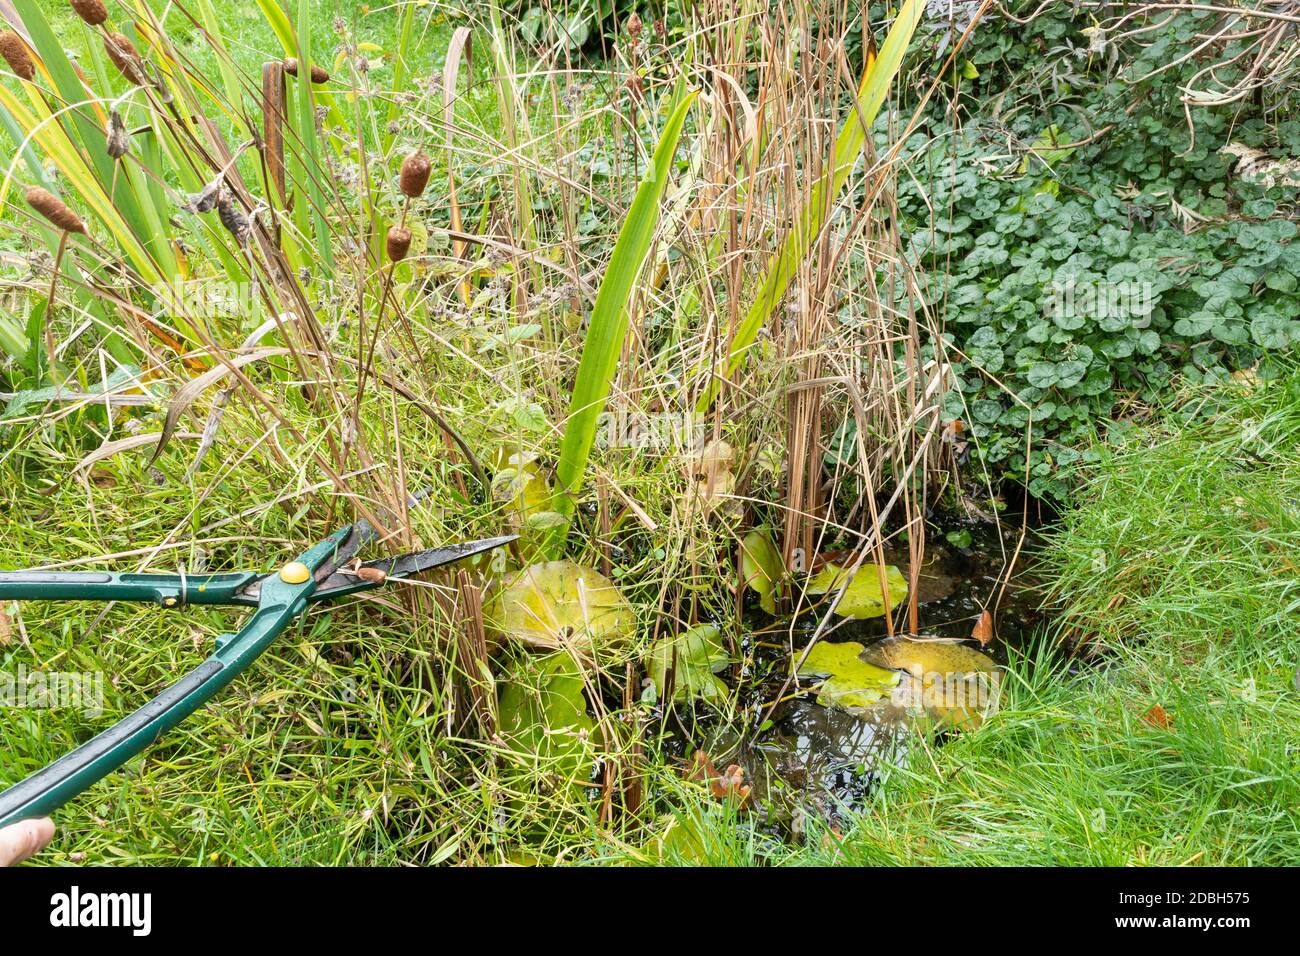 Erhaltung eines Gartens Wildtiere Teich im Herbst 1, Großbritannien. Beschneiden überwucherter Pfandpflanzen mit Scheren. Stockfoto